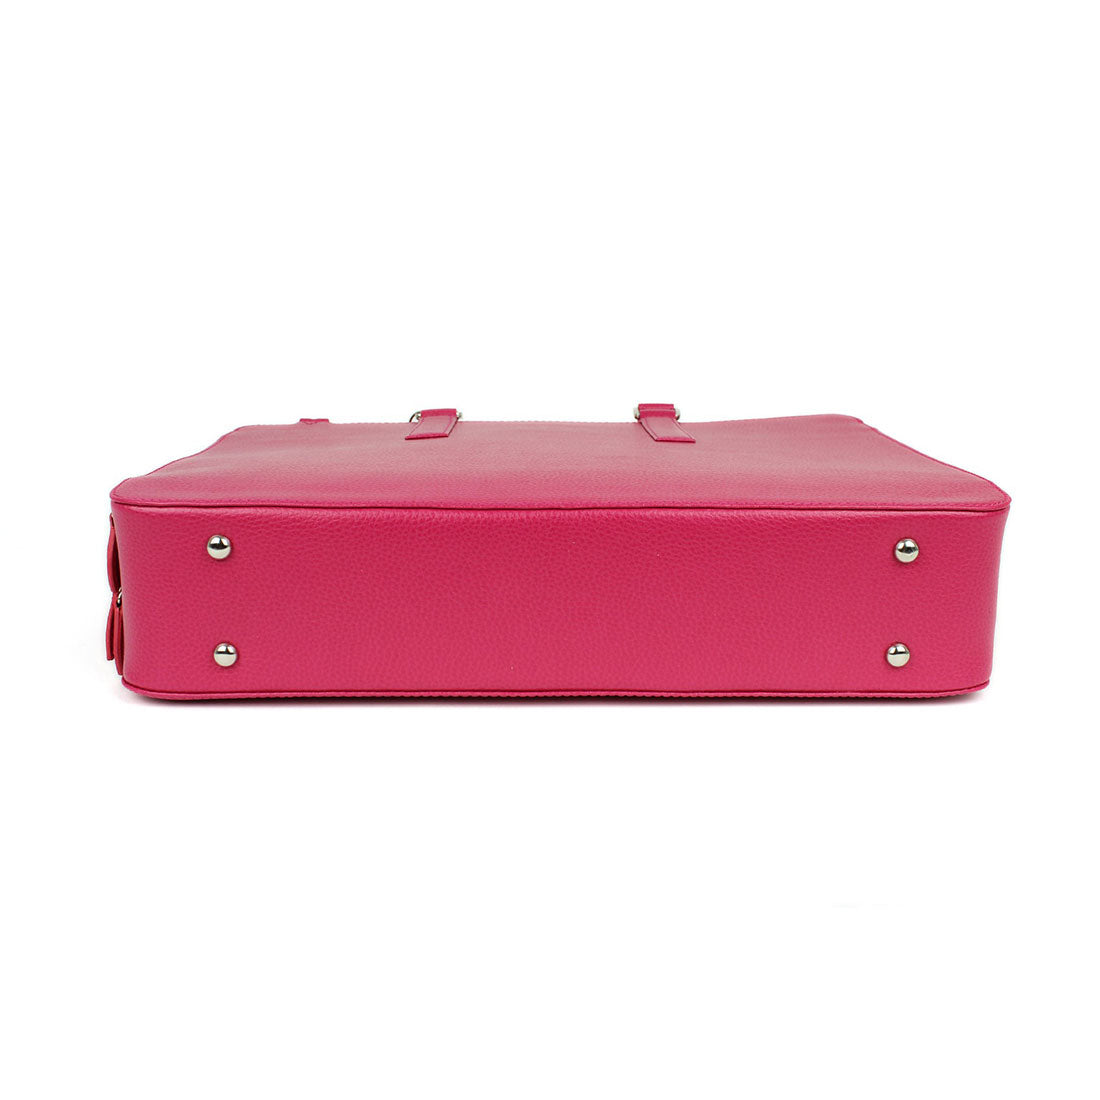 Deluxe Laptop Briefcase - Fuchsia#colour_laurige-fuchsia